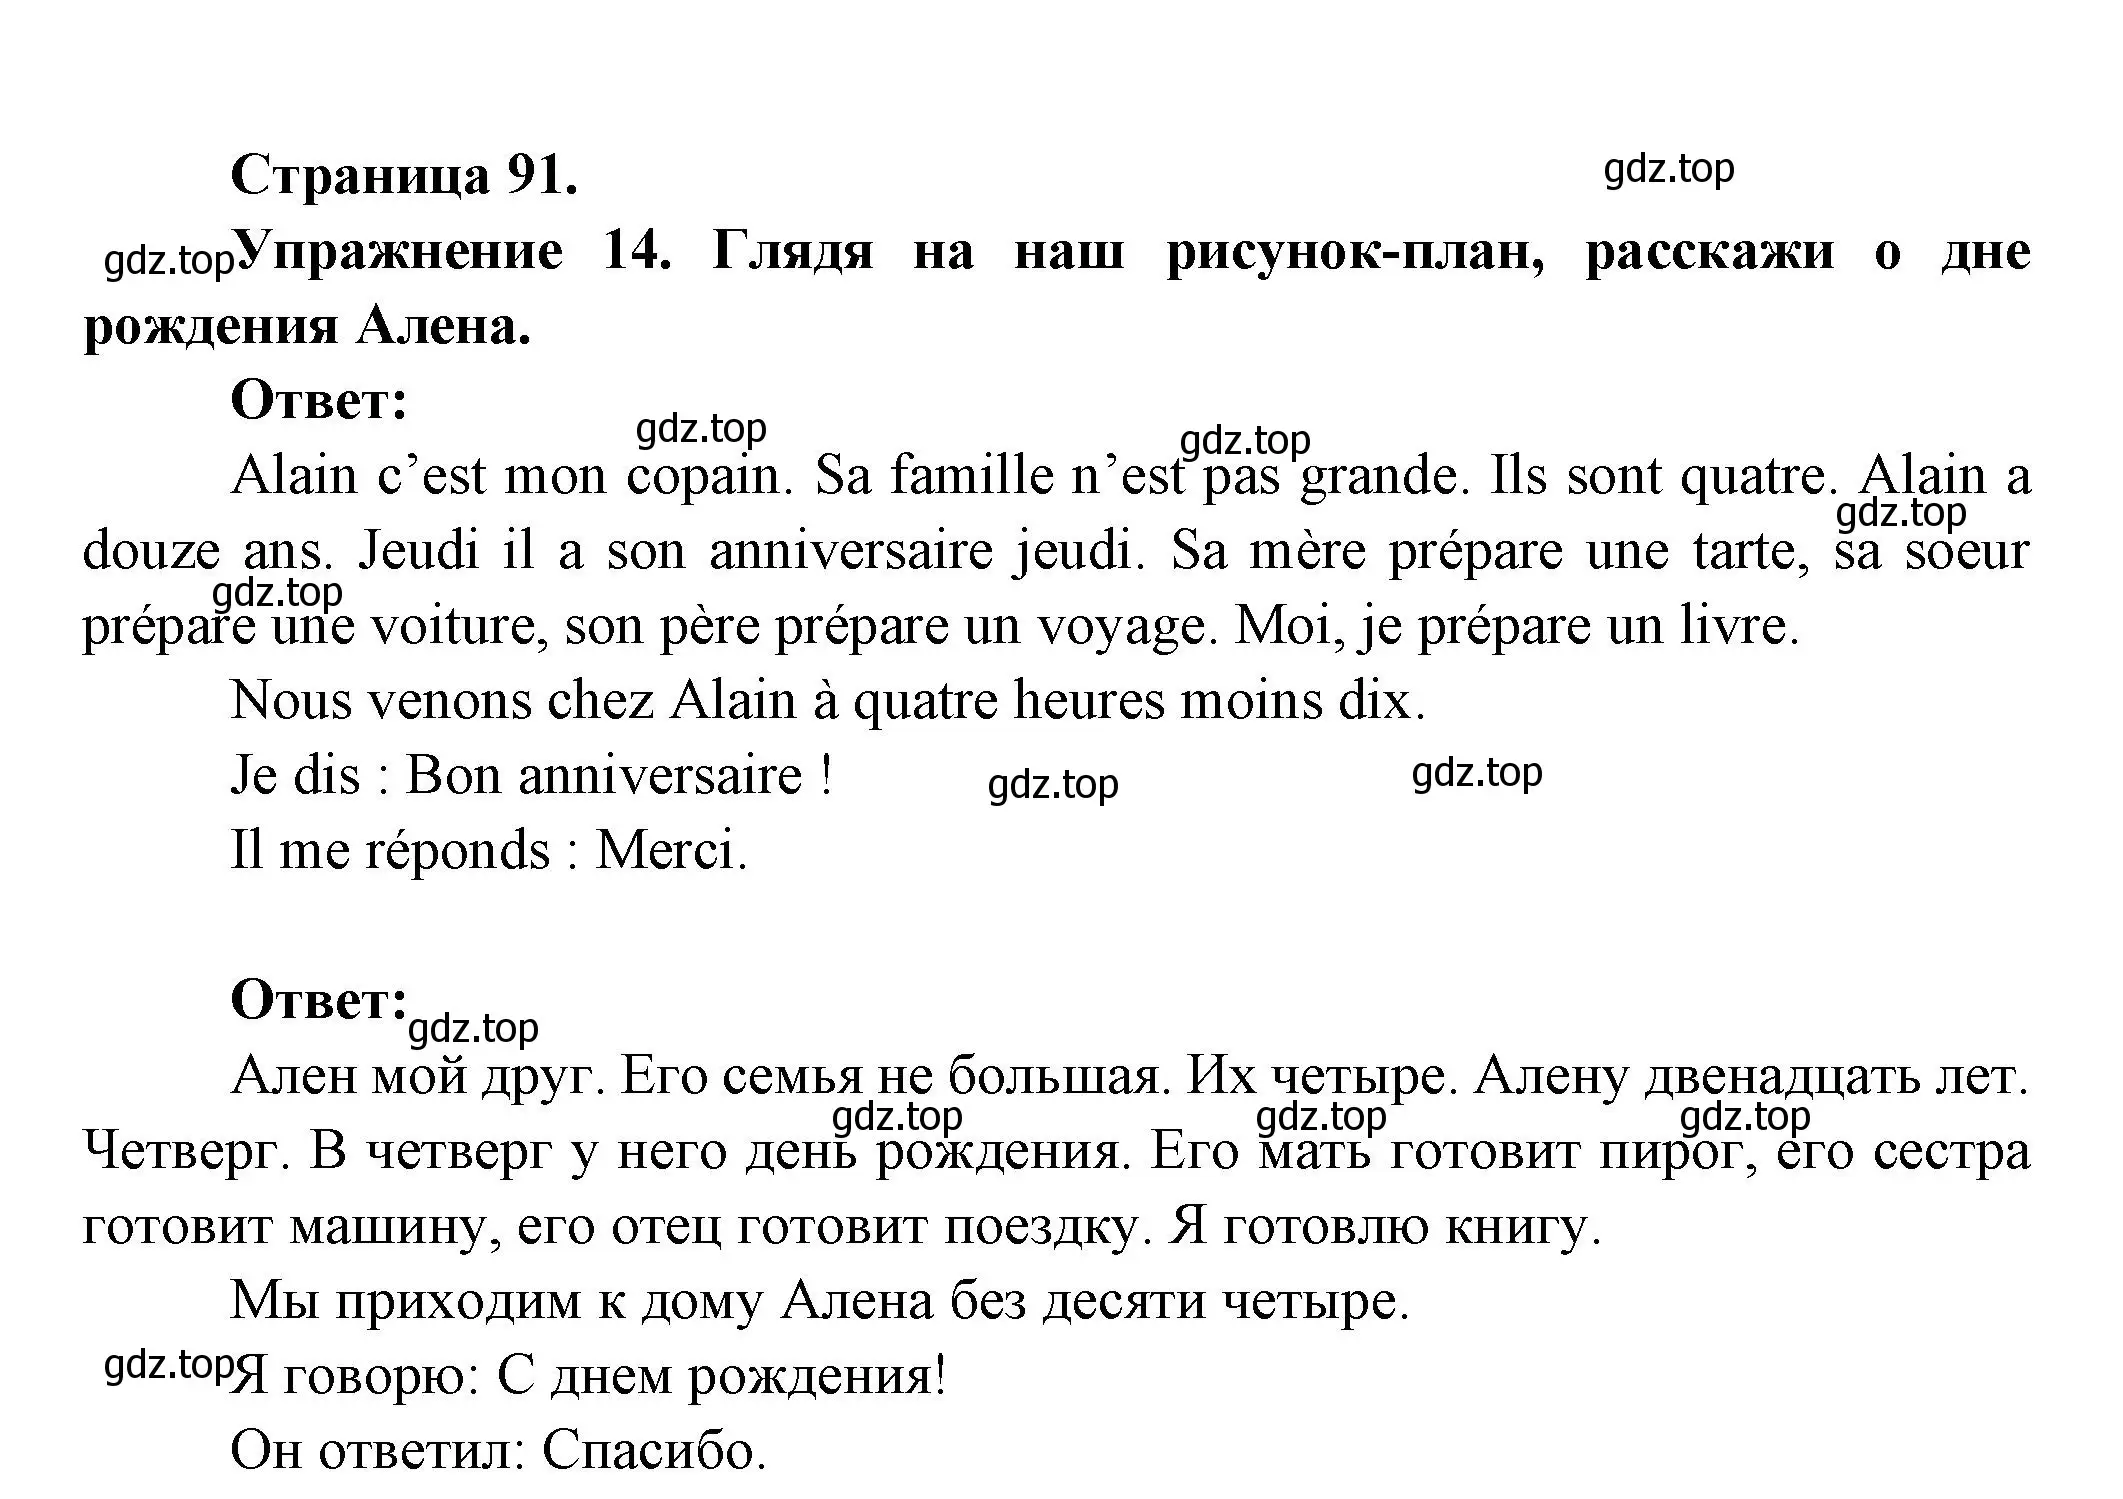 Решение номер 14 (страница 91) гдз по французскому языку 5 класс Береговская, Белосельская, учебник 1 часть